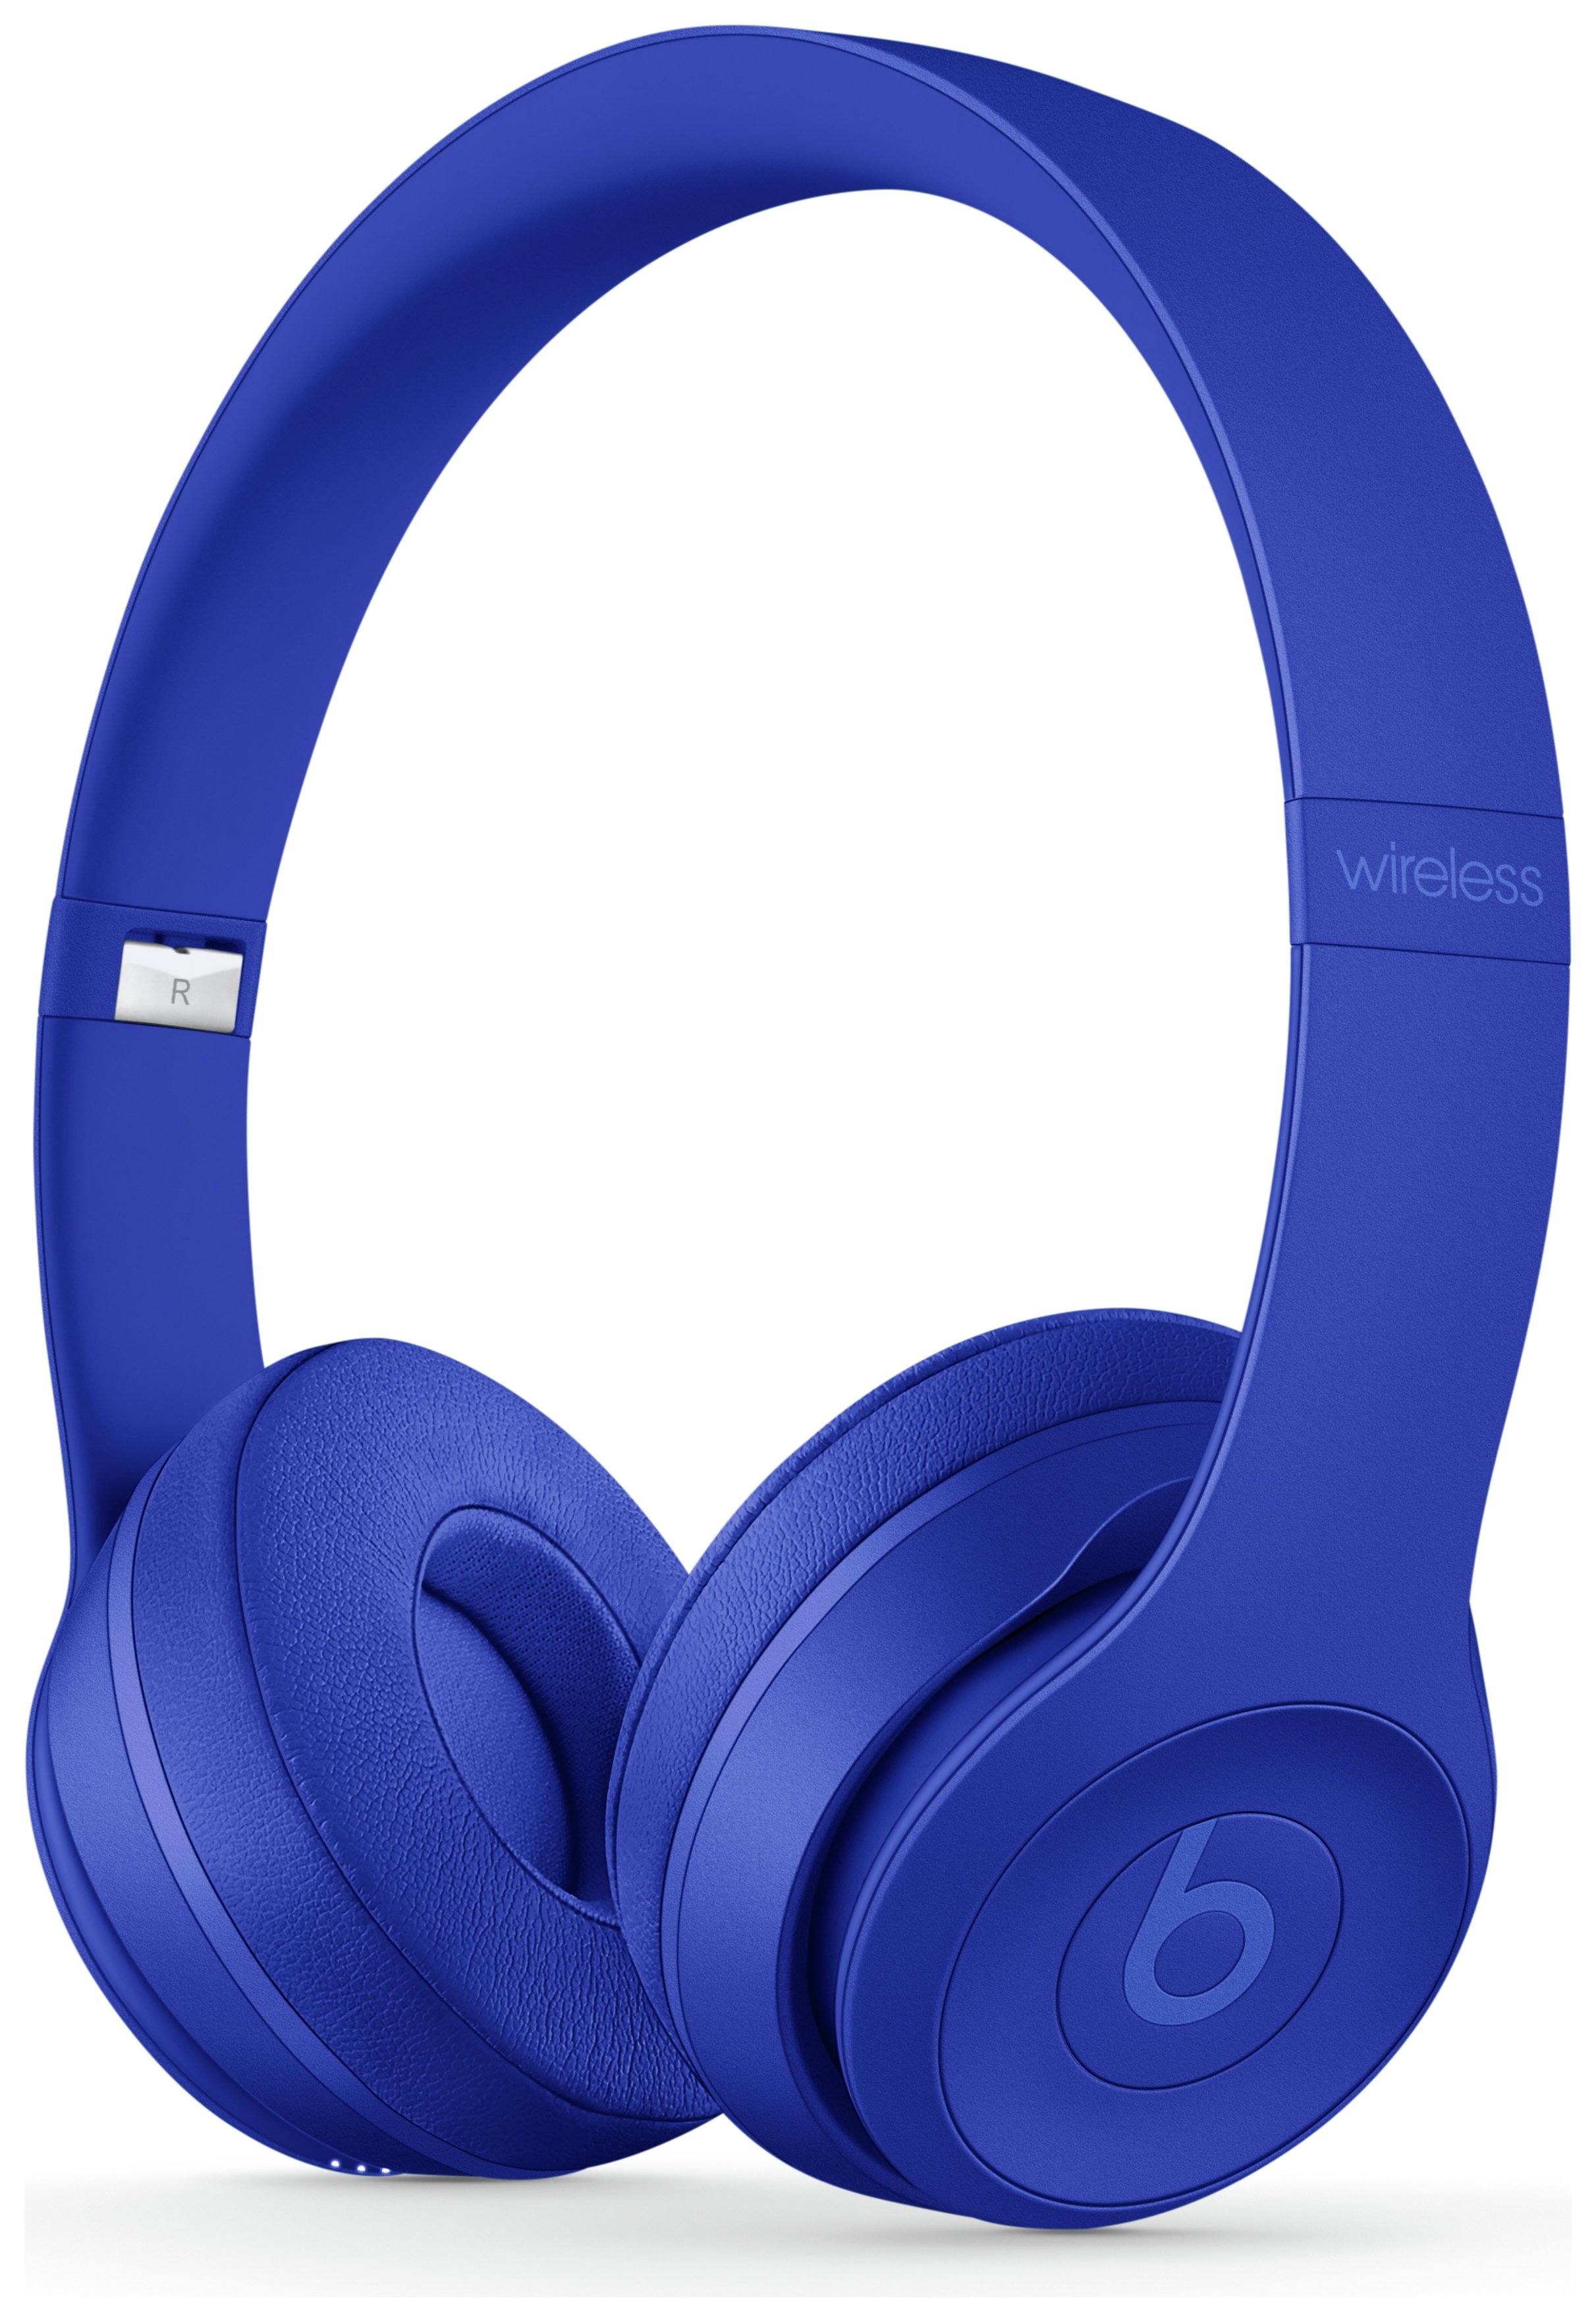 Beats by Dre Solo 3 Wireless On - Ear Headphones- Break Blue Reviews